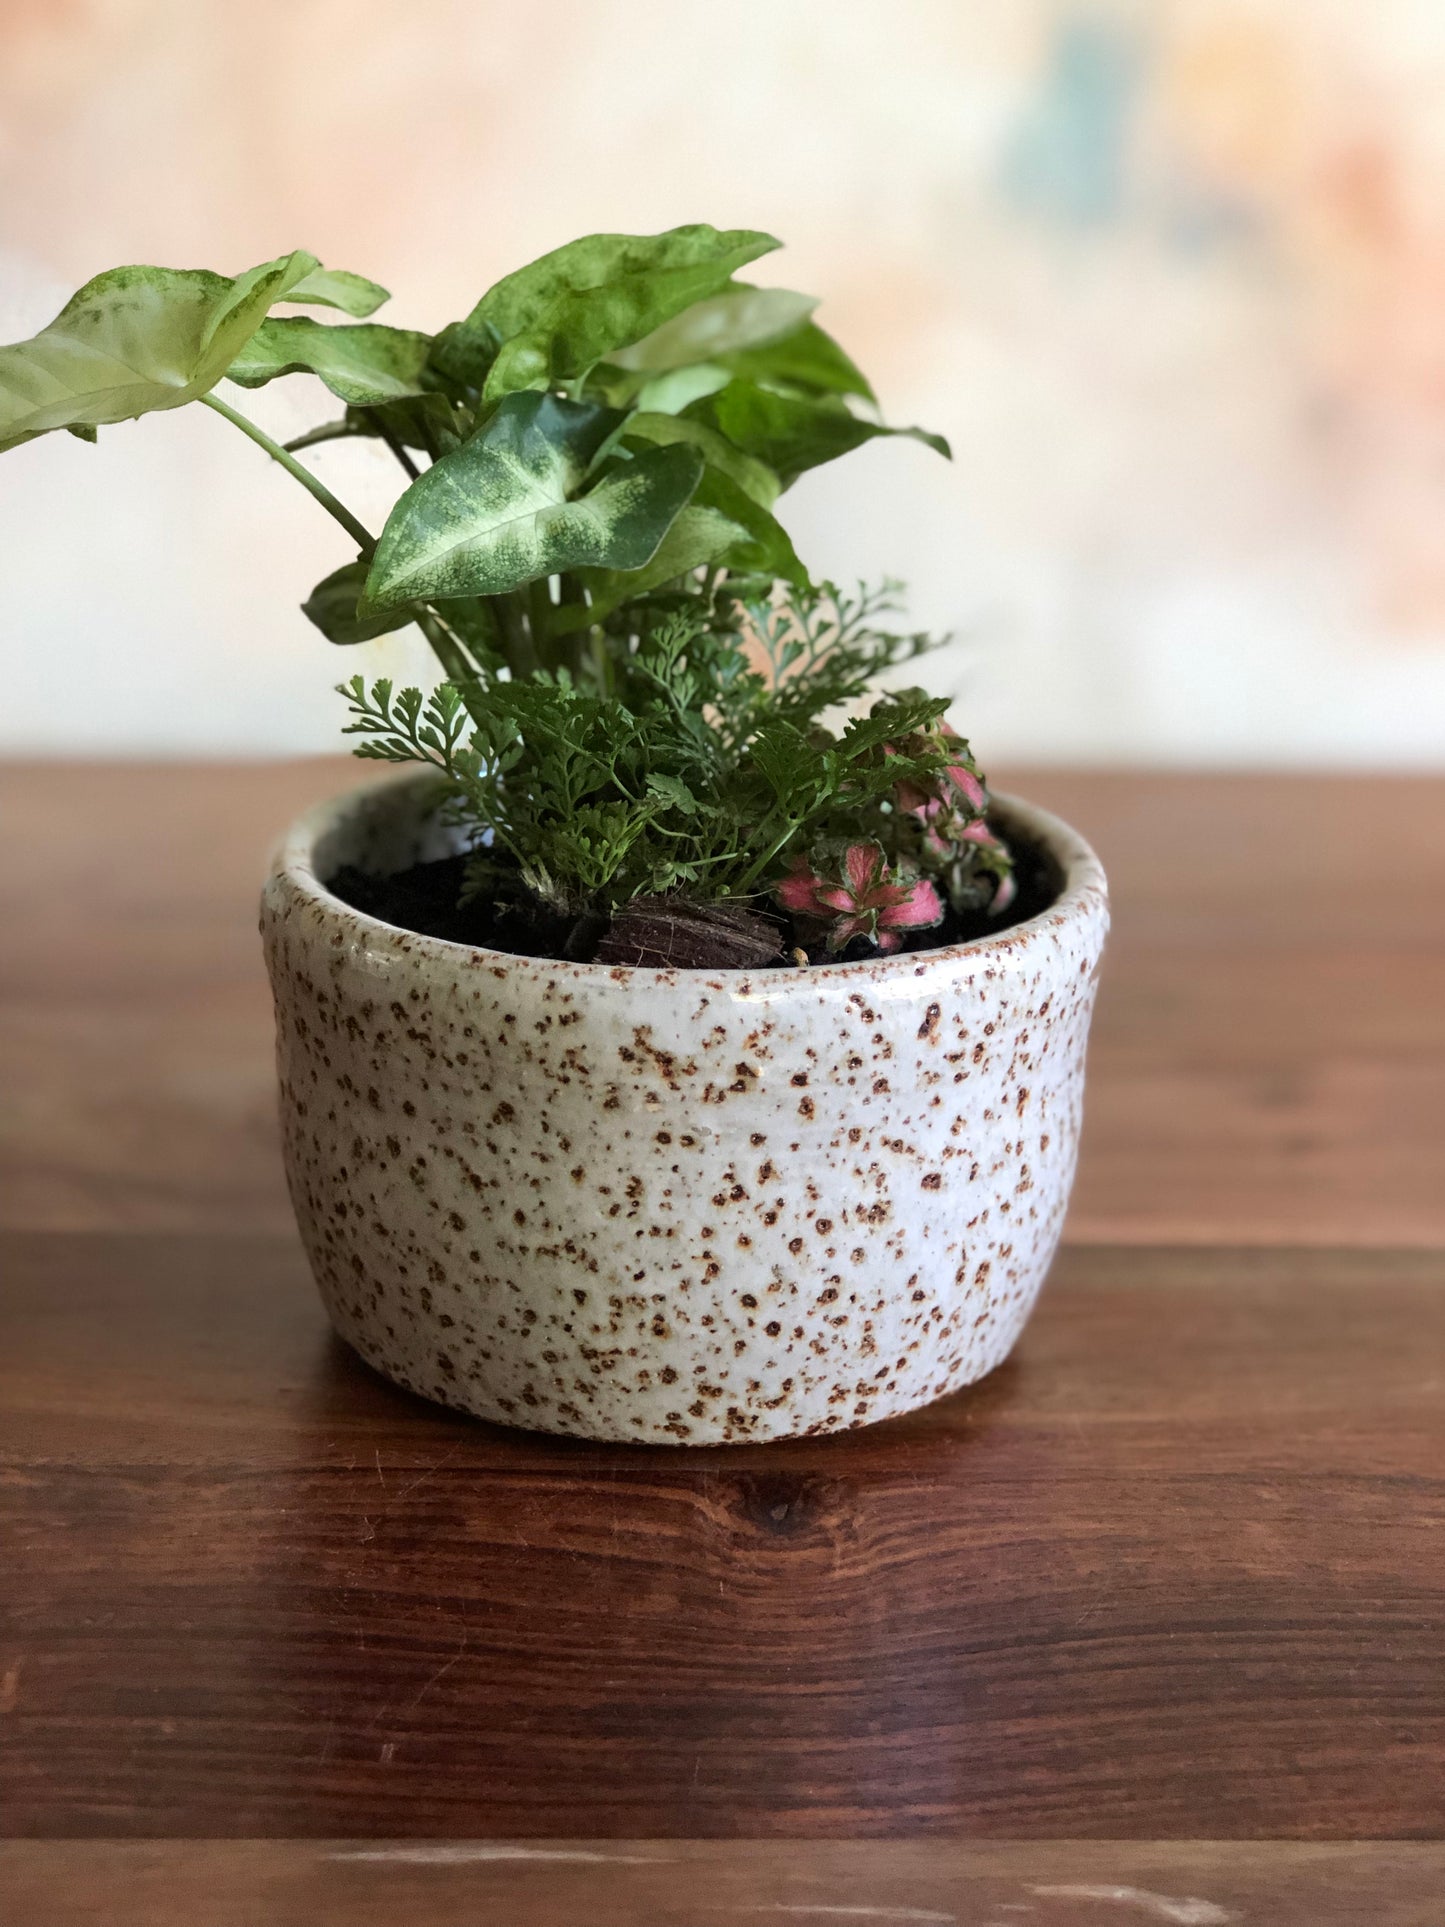 Teal green planter or vase no.1